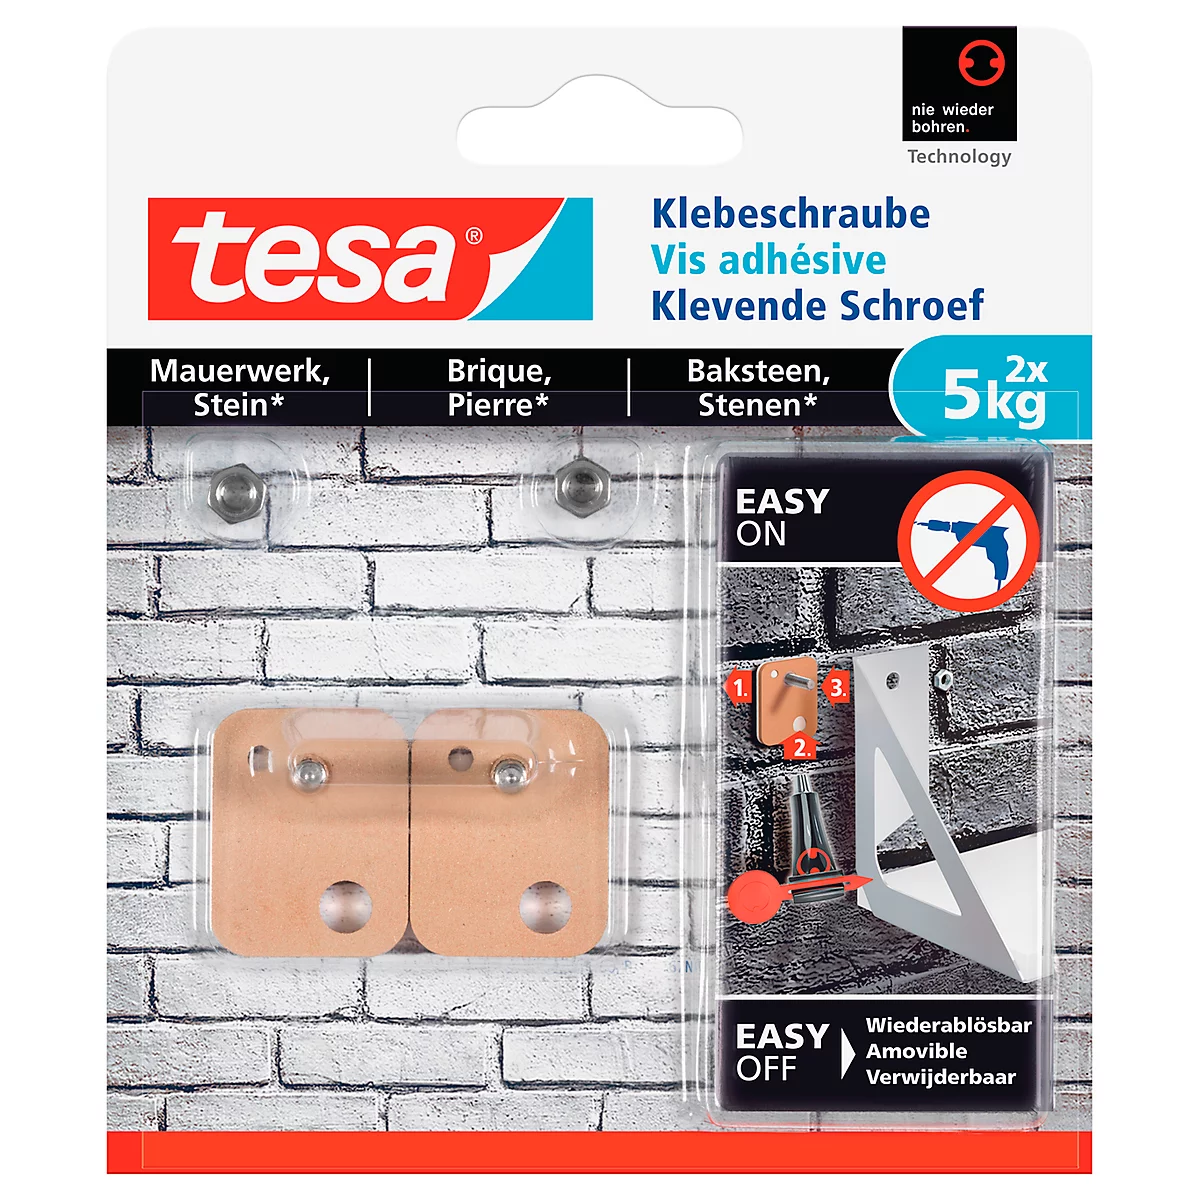 Klebeschraube tesa®, für Mauerwerk & Stein im Innen- & Aussenbereich, Haftkraft bis 5 kg, ablösbar, viereckig, 2 Stück